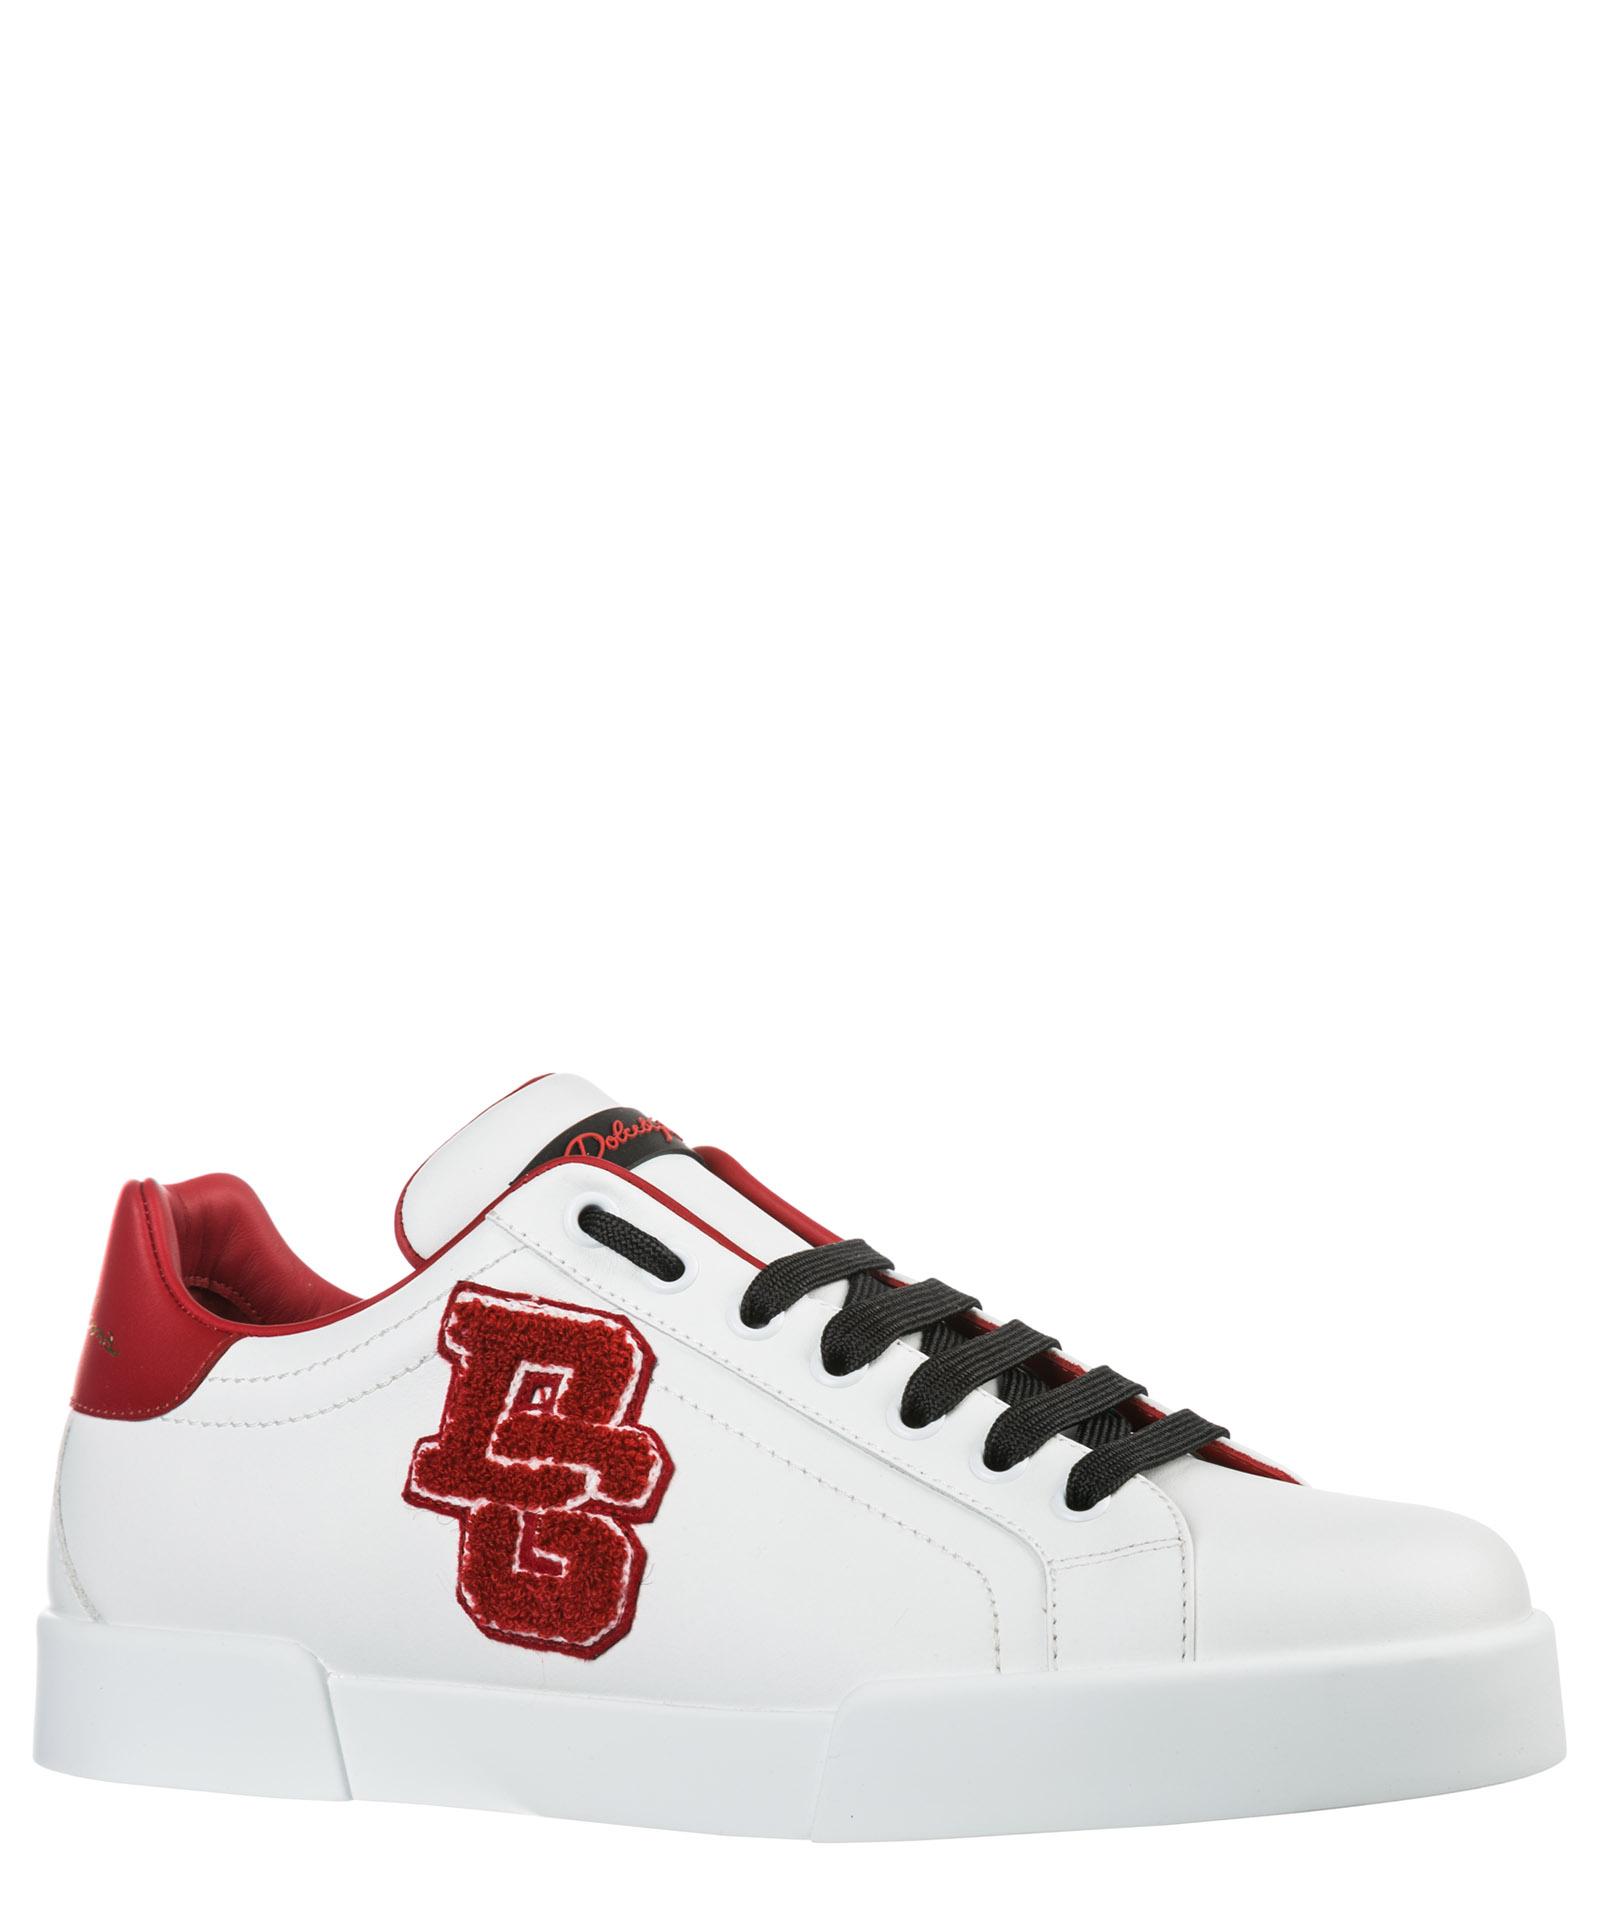 Sneakers low-top Portofino in pelleDolce & Gabbana in Pelle da Uomo colore Bianco Uomo Sneakers da Sneakers Dolce & Gabbana 